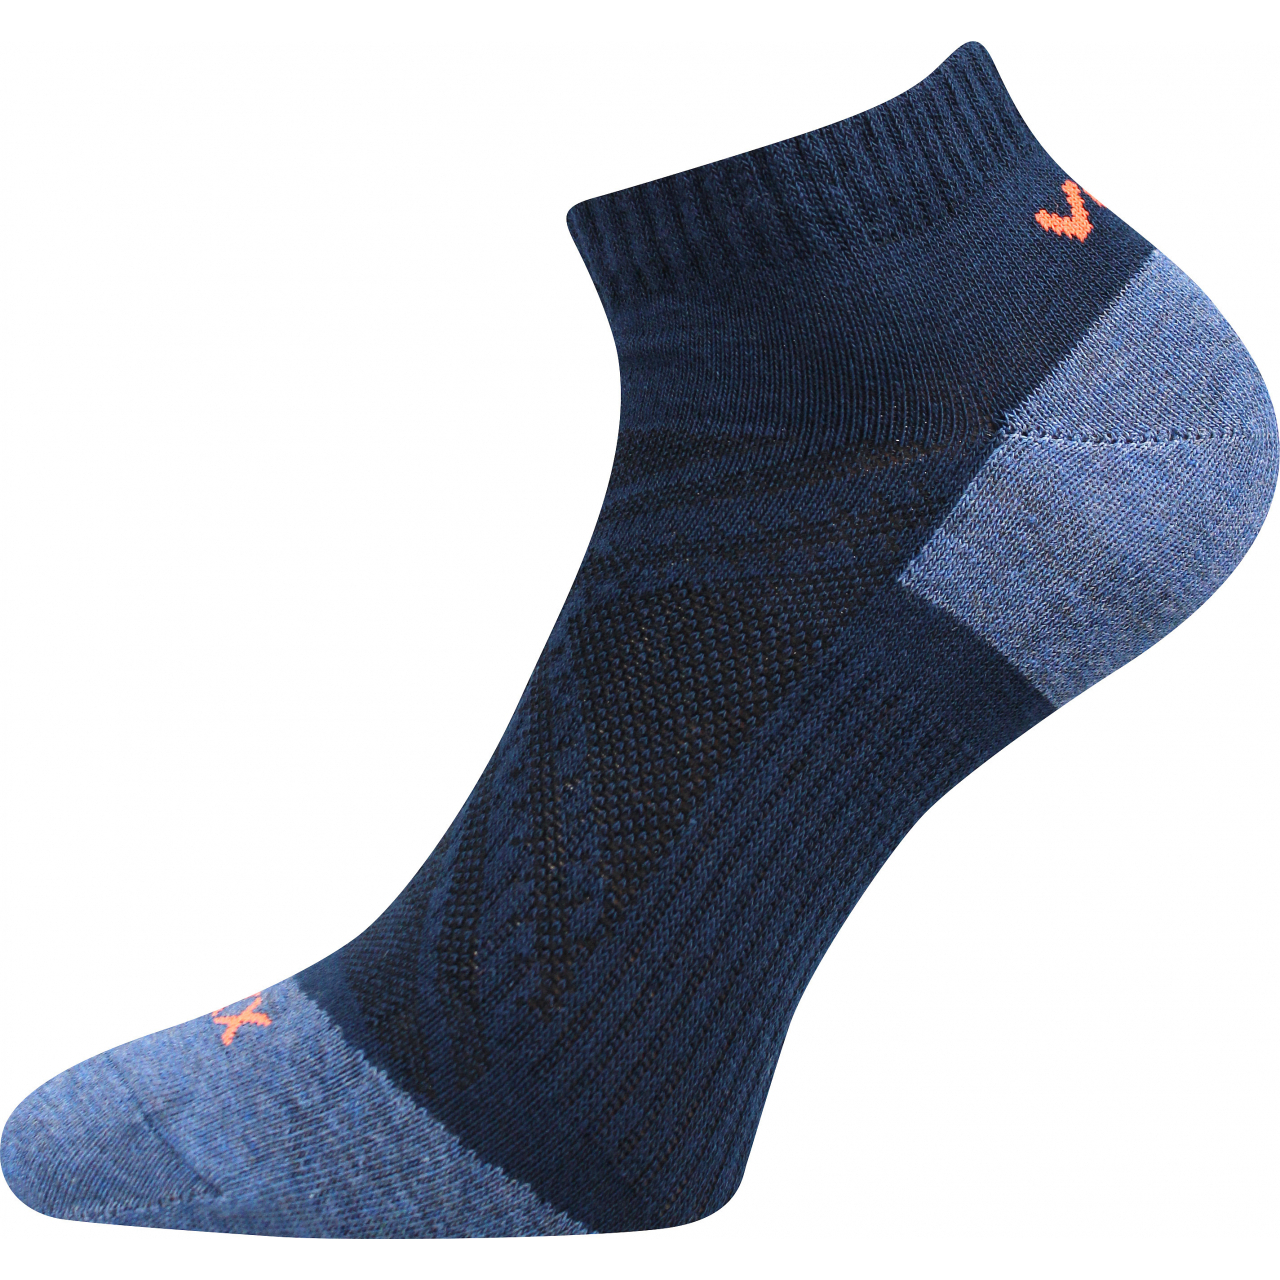 Ponožky slabé unisex Voxx Rex 15 - tmavě modré, 35-38